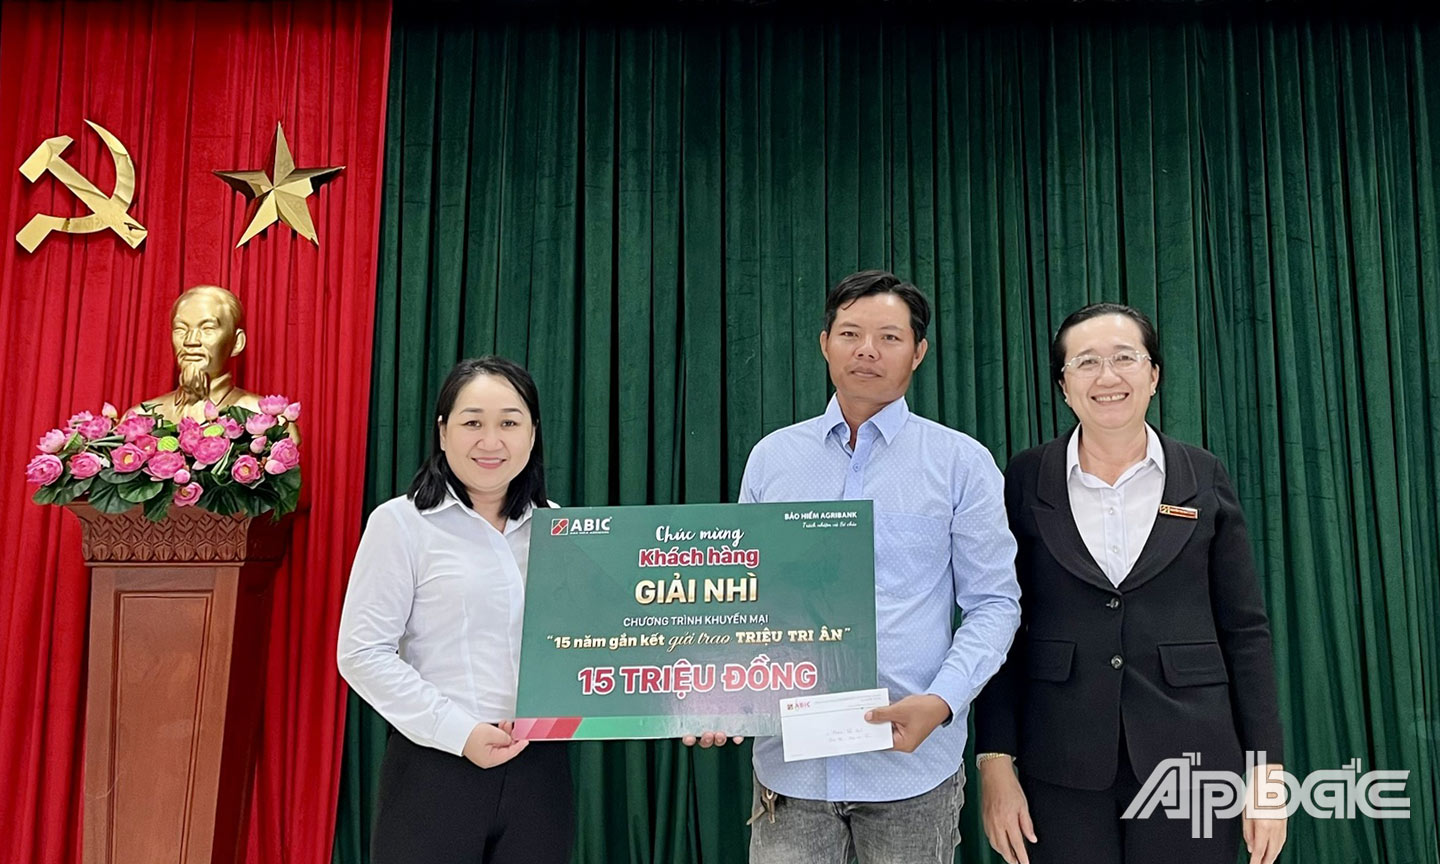 Bà Lê Thị Ngọc Sương, Trưởng phòng Kinh doanh ABIC khu vực Tiền Giang (bìa trái) và Giám đốc Agribank Chi nhánh huyện Tân Phước Nguyễn Thị Thúy Hằng (bìa phải) trao giải thưởng cho khách hàng.